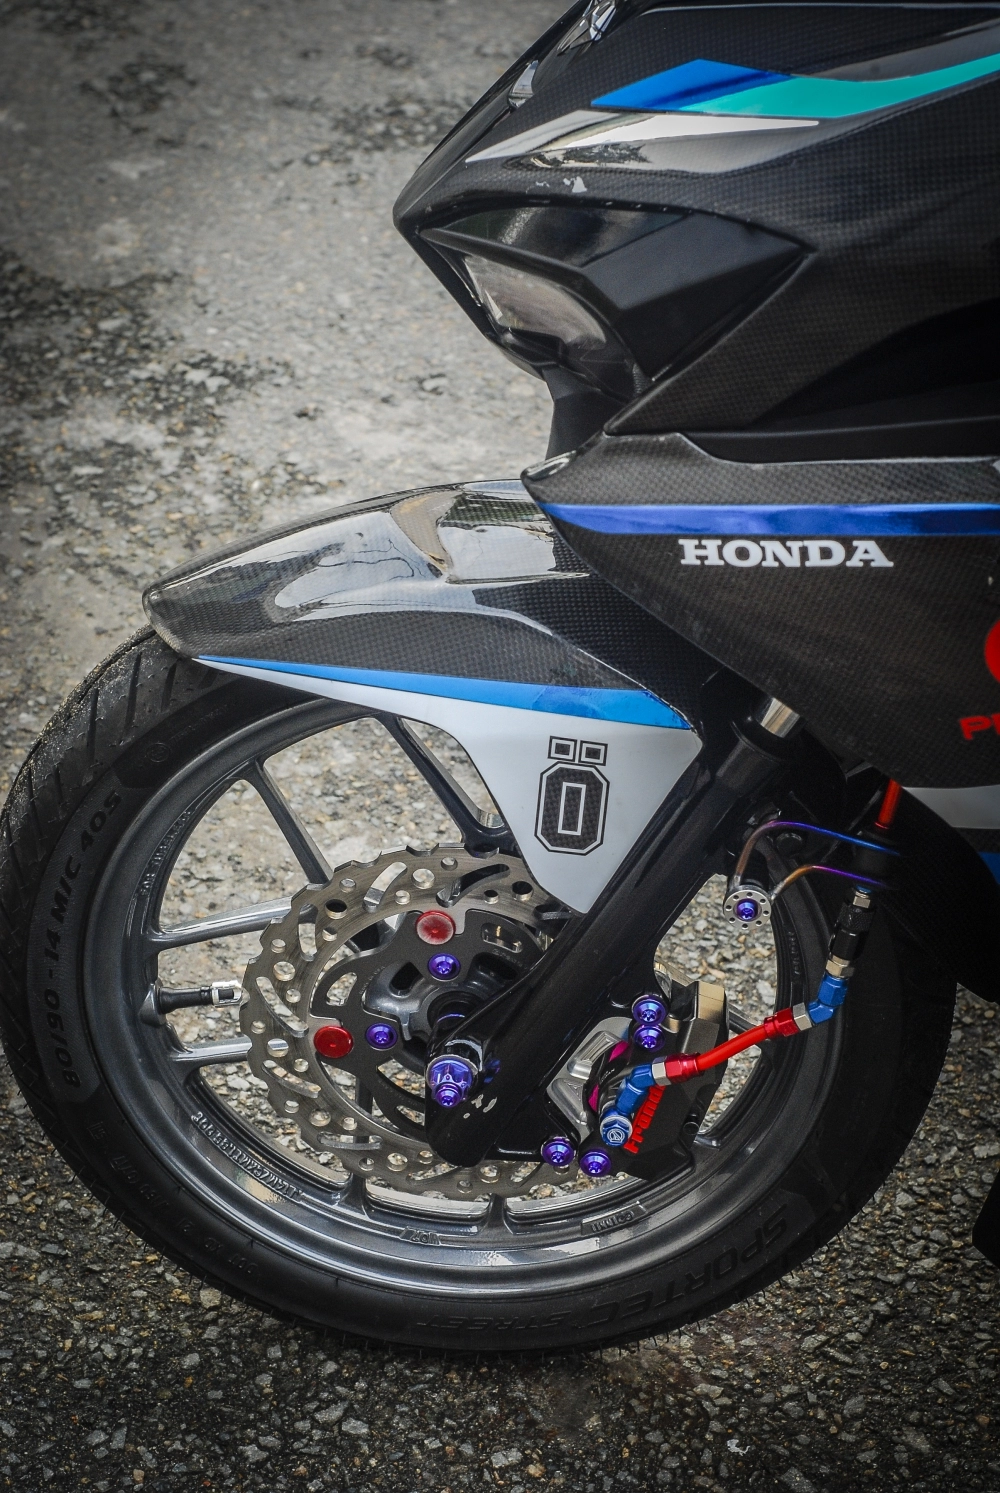 Honda air blade độ bộ cánh carbon fiber cùng khối đồ chơi nặng kg